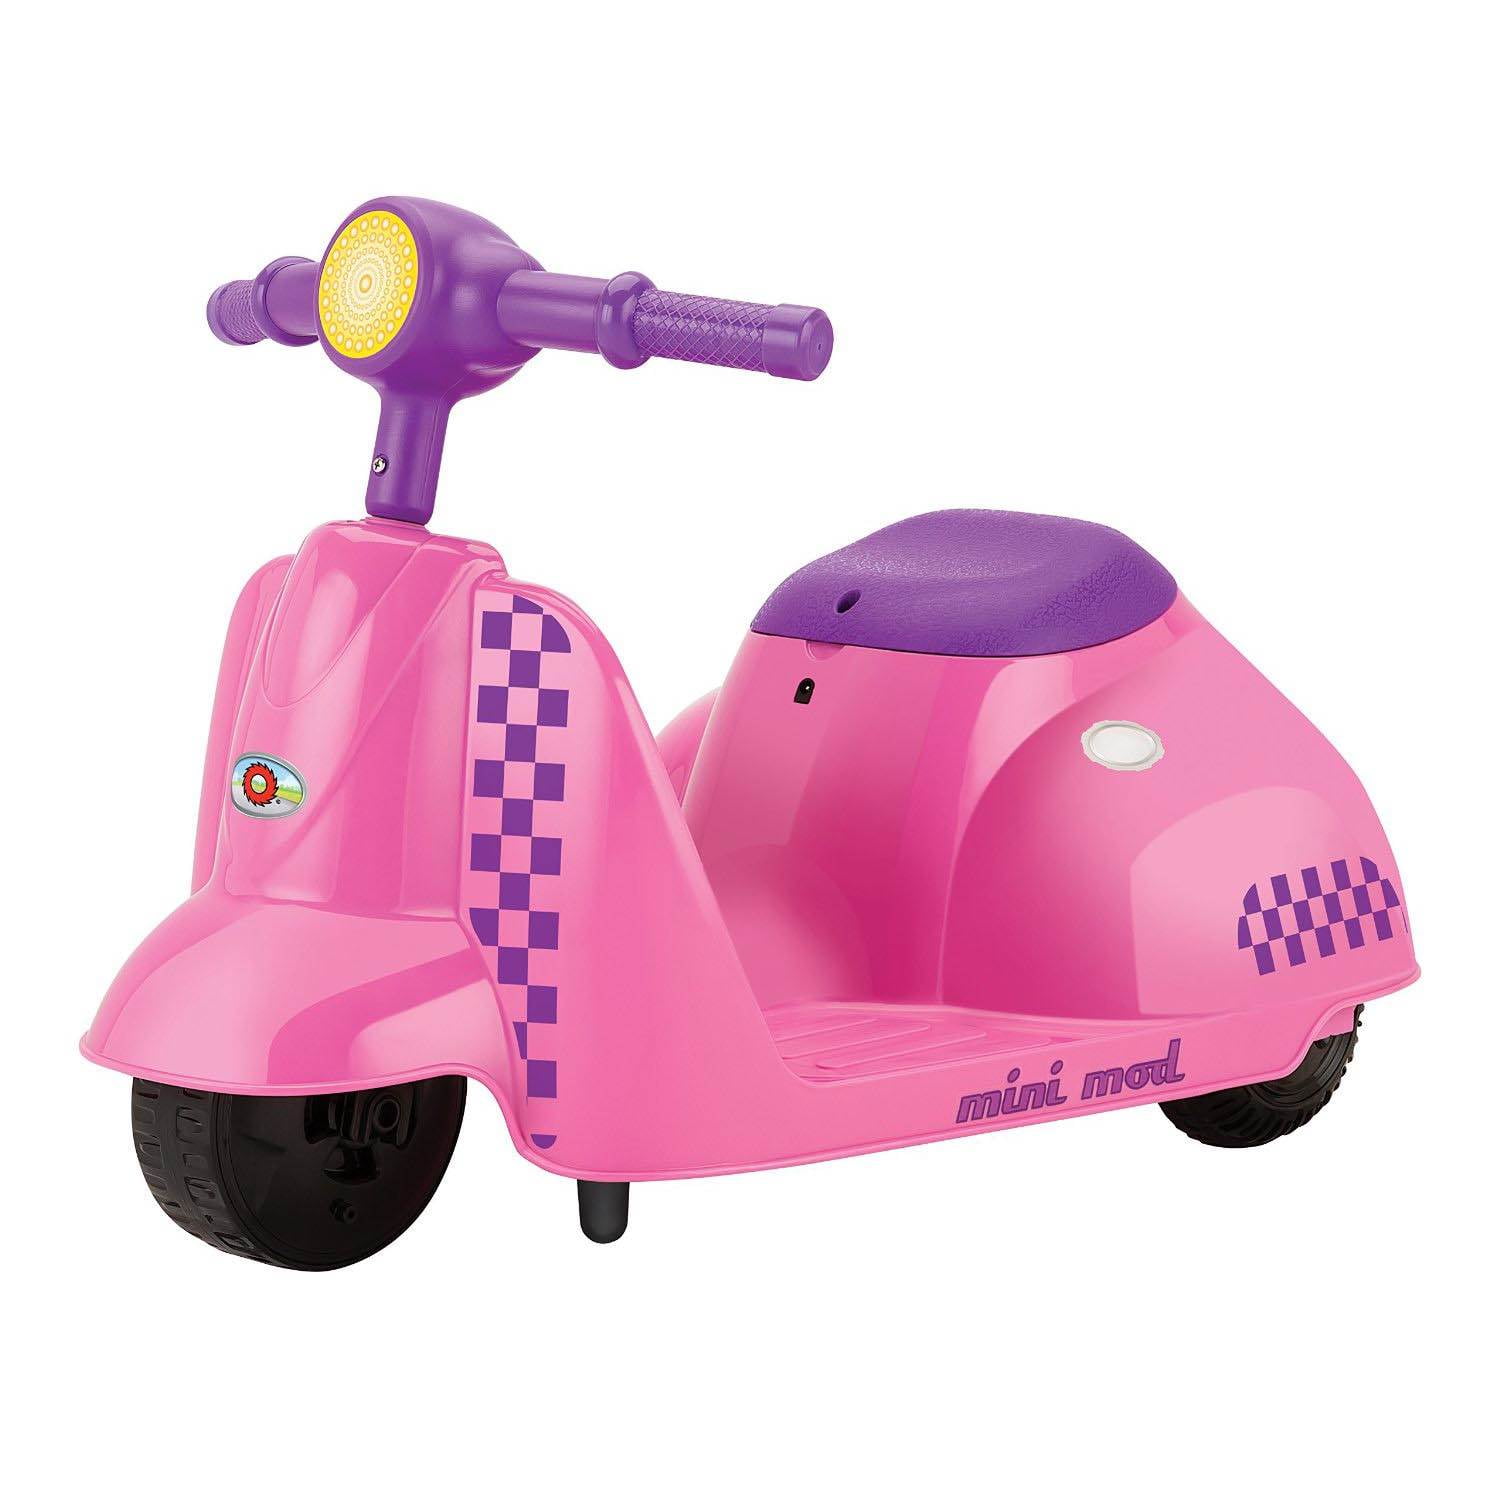 little girl motorized scooter